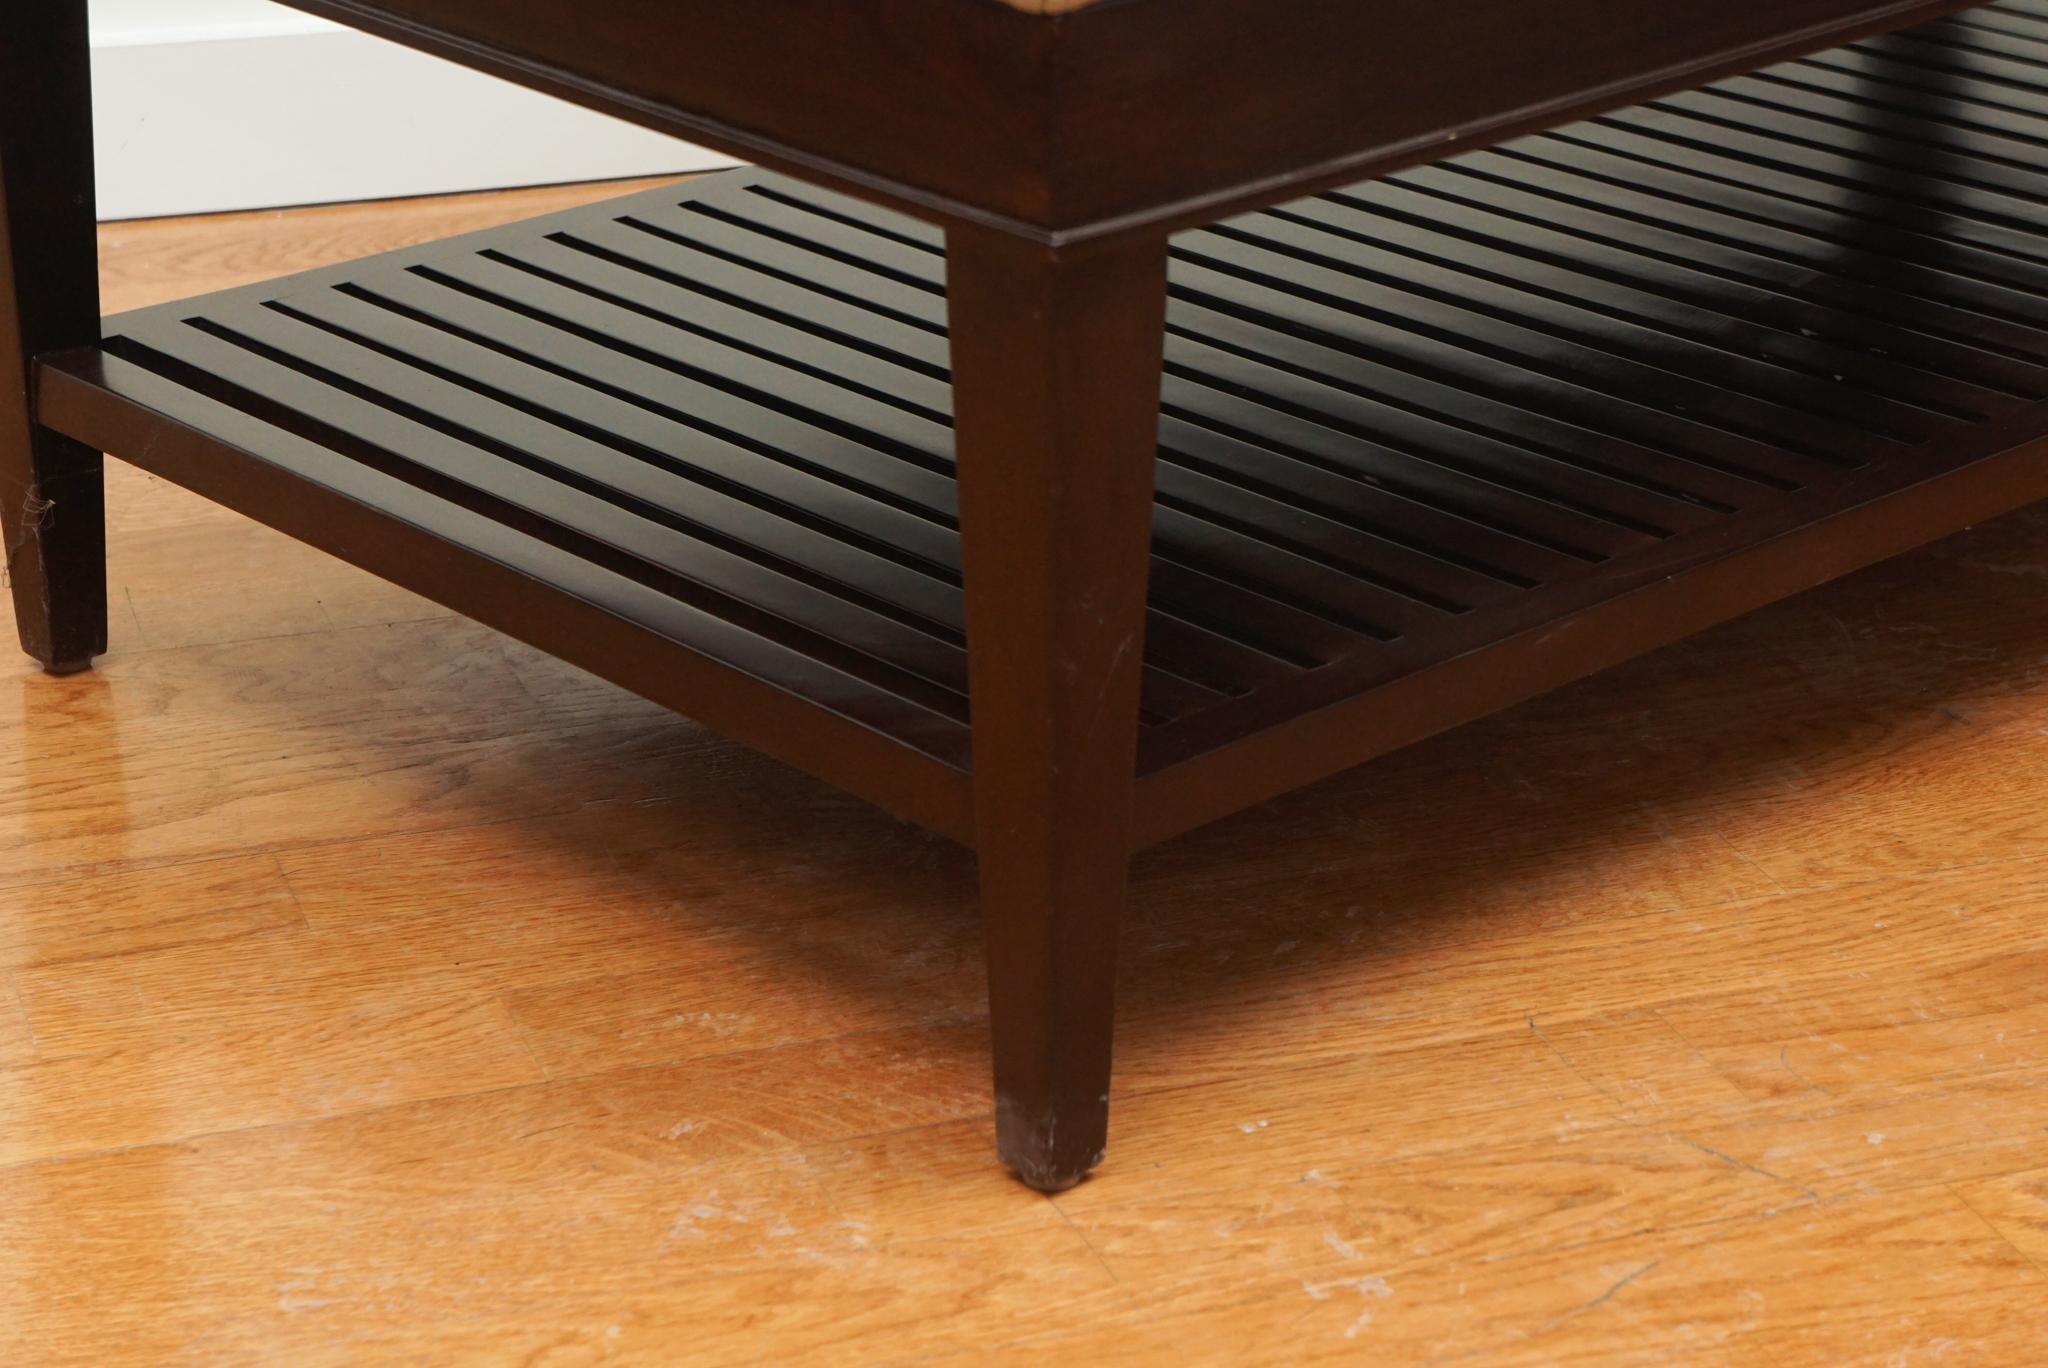 Modern A. Rudin Leather Bench/Ottoman with Slat Bottom Shelf